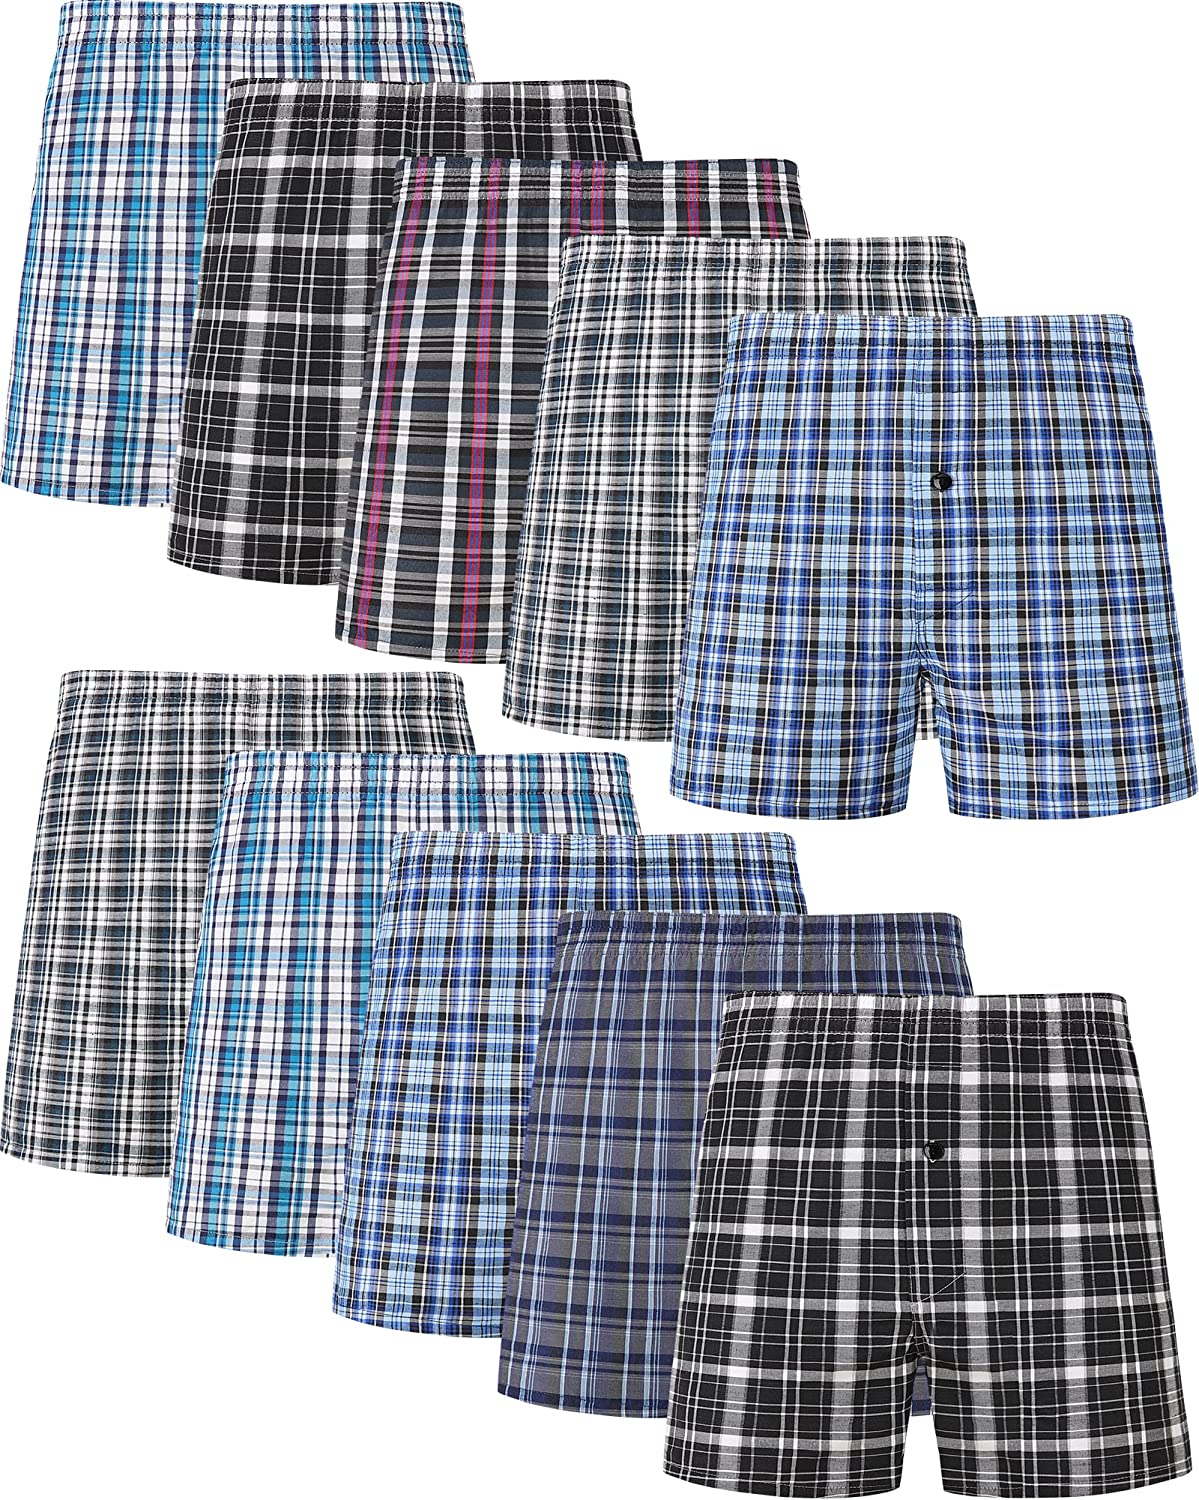 JupiterSecret Men's Underwear Woven Boxers for Men Pack Cotton Boxer Shorts  Elas